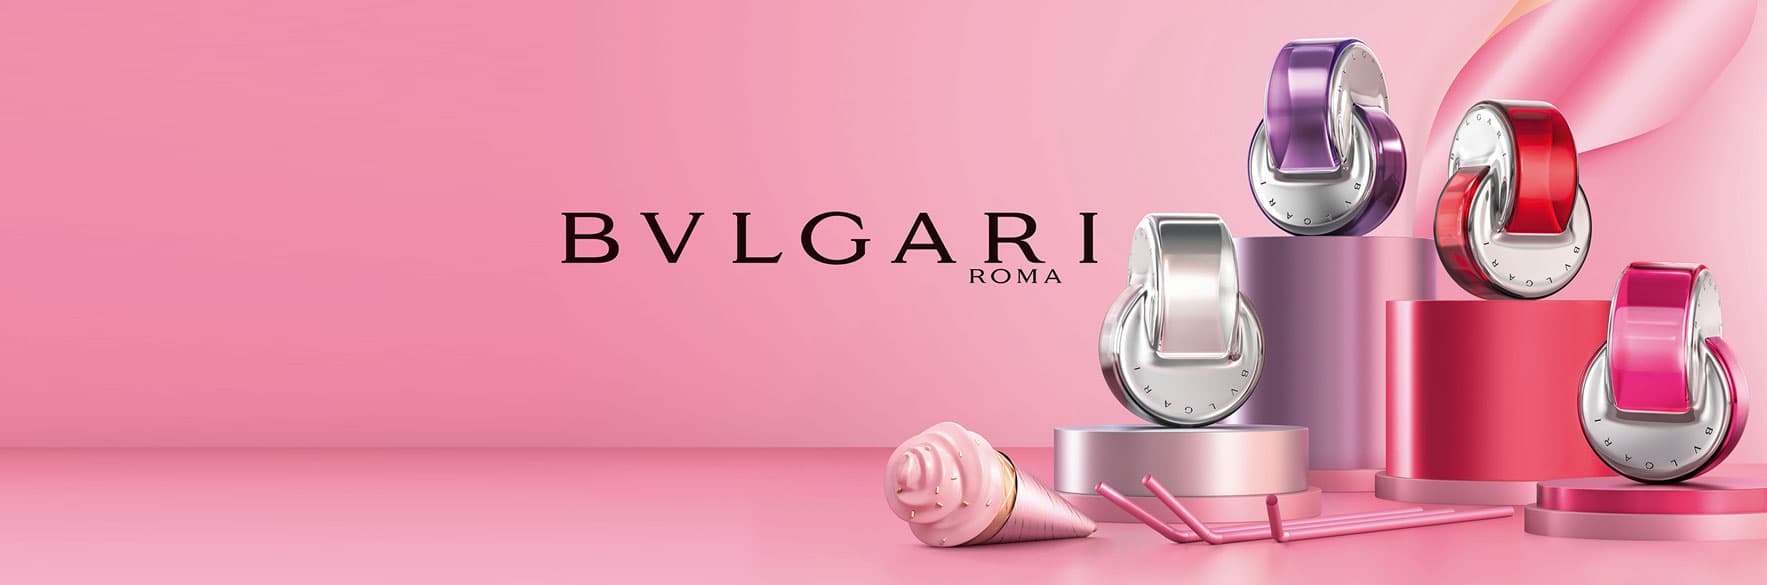 محصولات بولگاری اصل BVLGARI ایتالیا